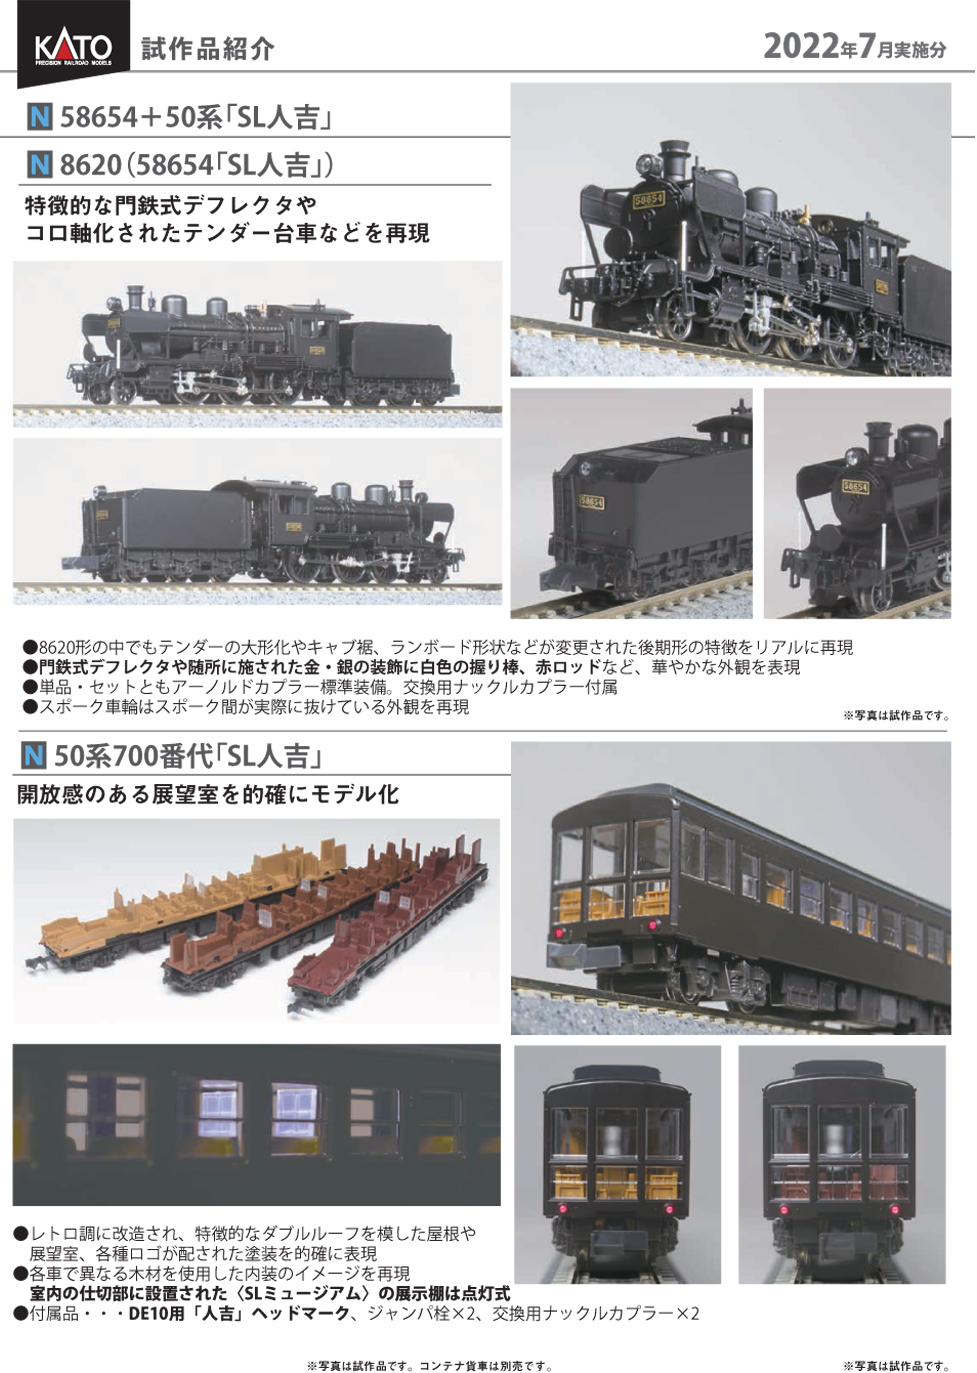 ホビーショップ タムタム 鉄道部 on Twitter: "KATO 11月発売予定 SL人吉 8620型58654・50系700番台 試作品